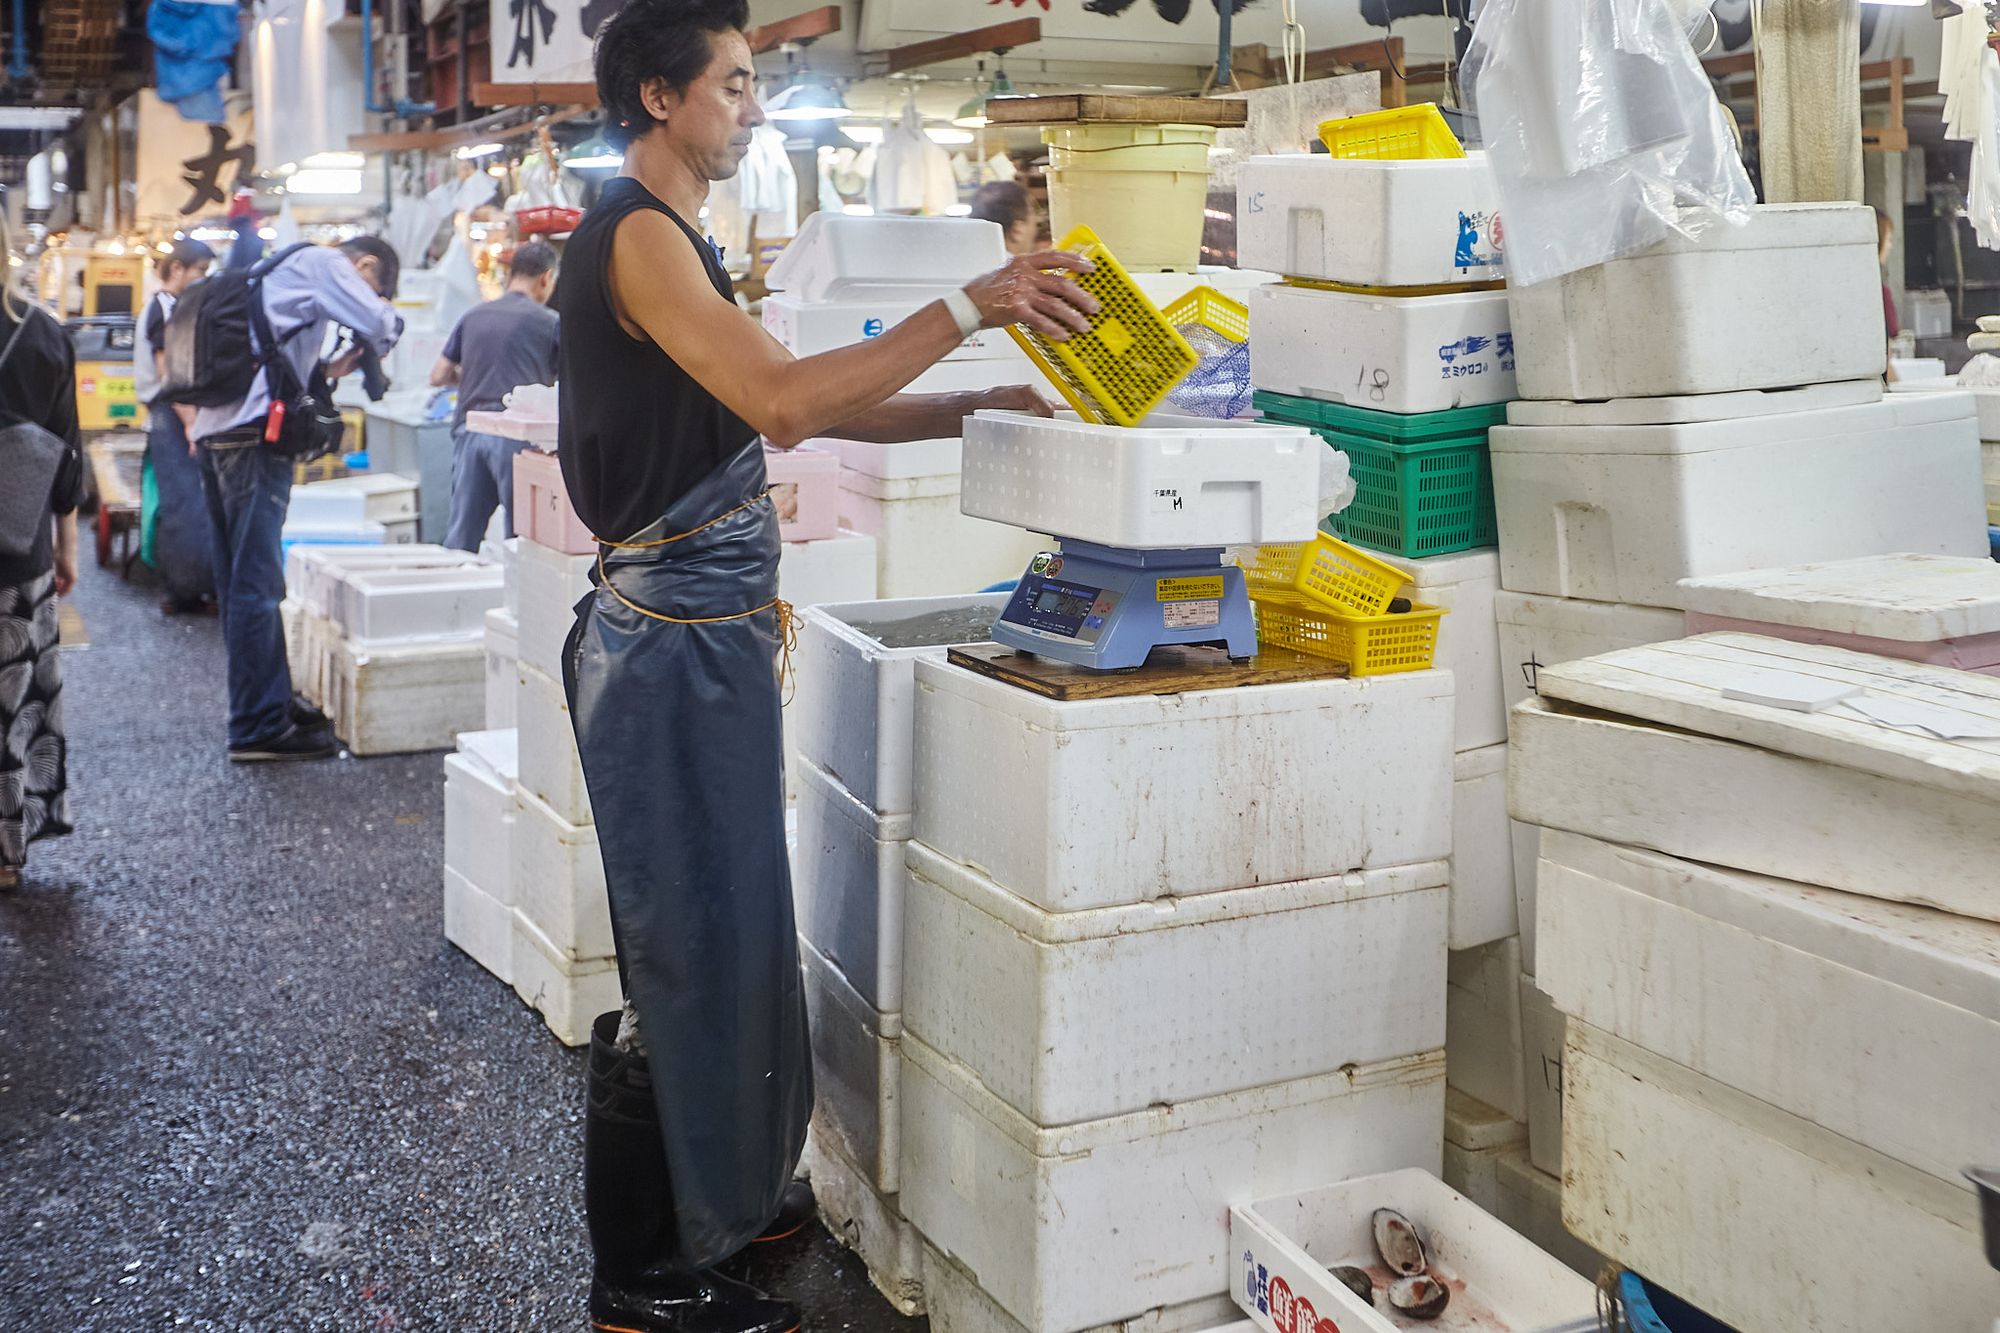 Tsukiji Fish Market in Tokyo